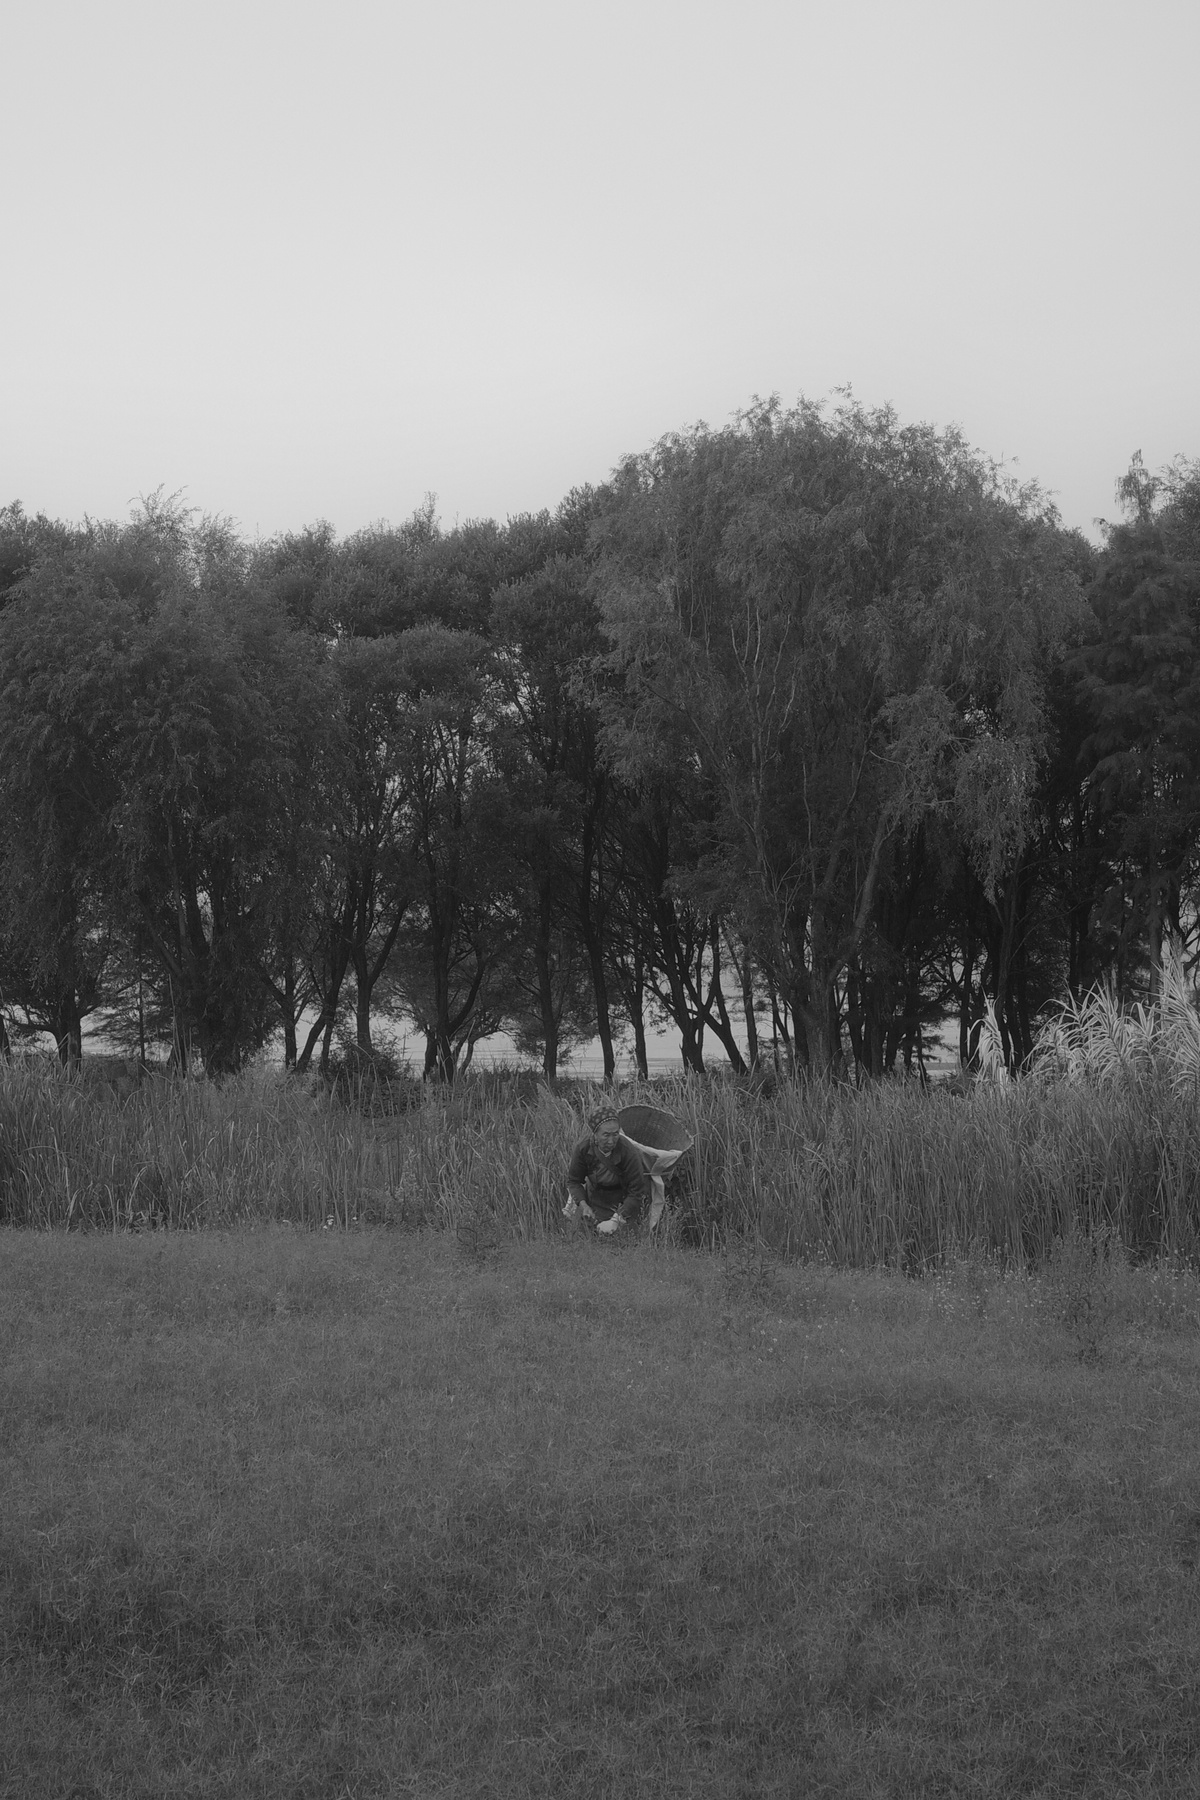 黑白照片 一个人在草地上走 背景有高大的树木 一只狗站在草地上。